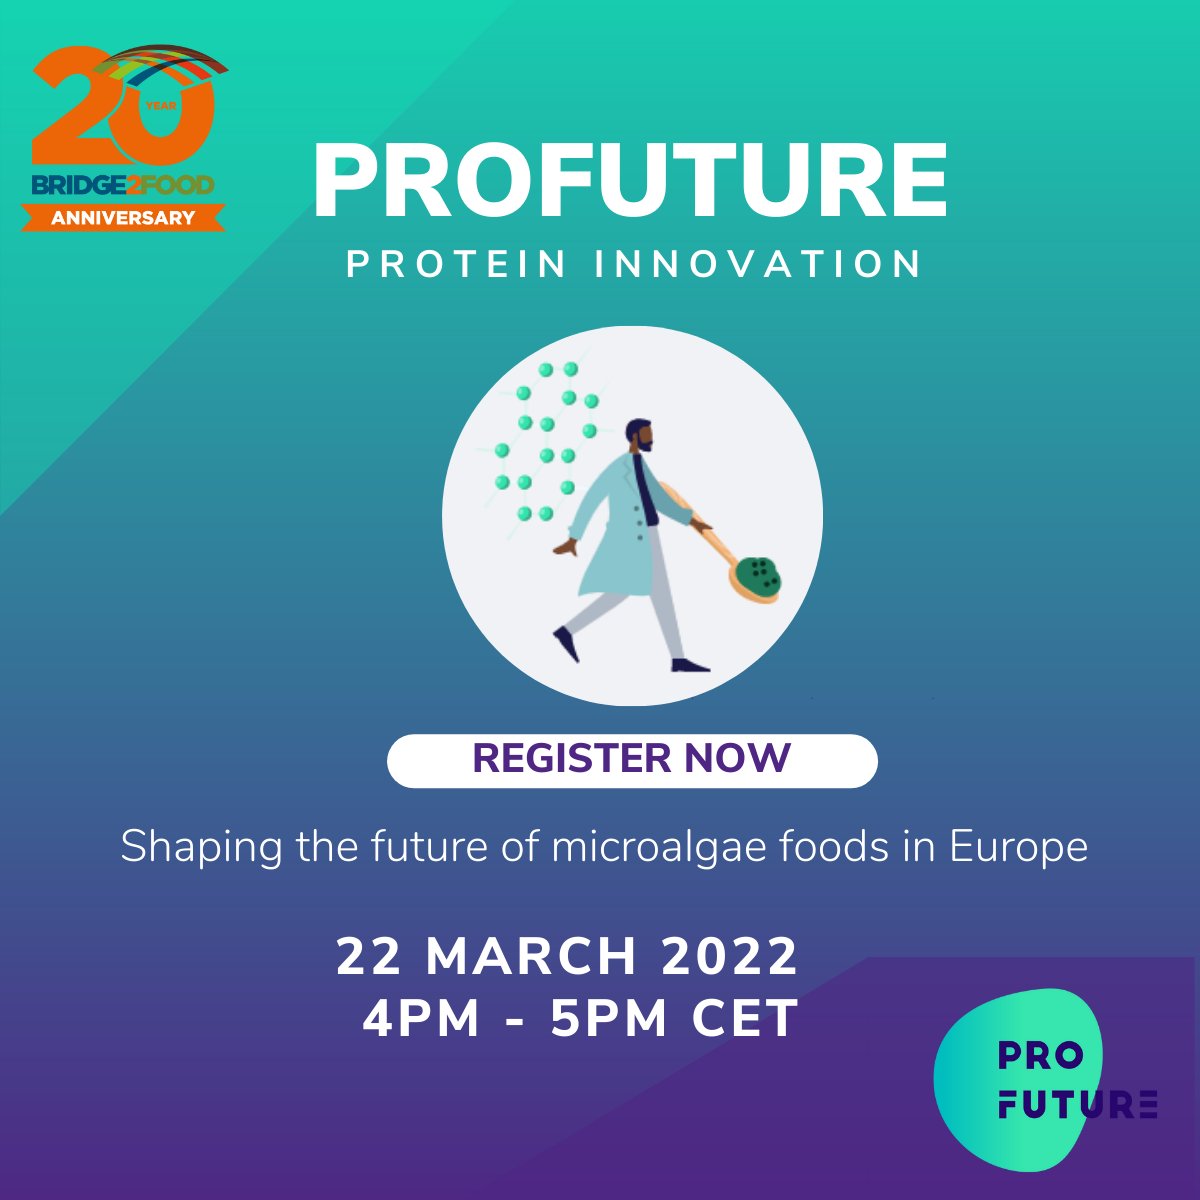 Το Ευρωπαϊκό πρόγραμμα PROFUTURE, προσκαλεί όλους τους ενδιαφερόμενους στο webinar, που θα πραγματοποιηθεί την Τρίτη 22 Μαρτίου και ώρα 5:00μ.μ. EET.
Πληροφορίες και συμμετοχή στο webinar: bit.ly/3IhFMLl
#ProFutureEU #webinar #microalgae #proteins